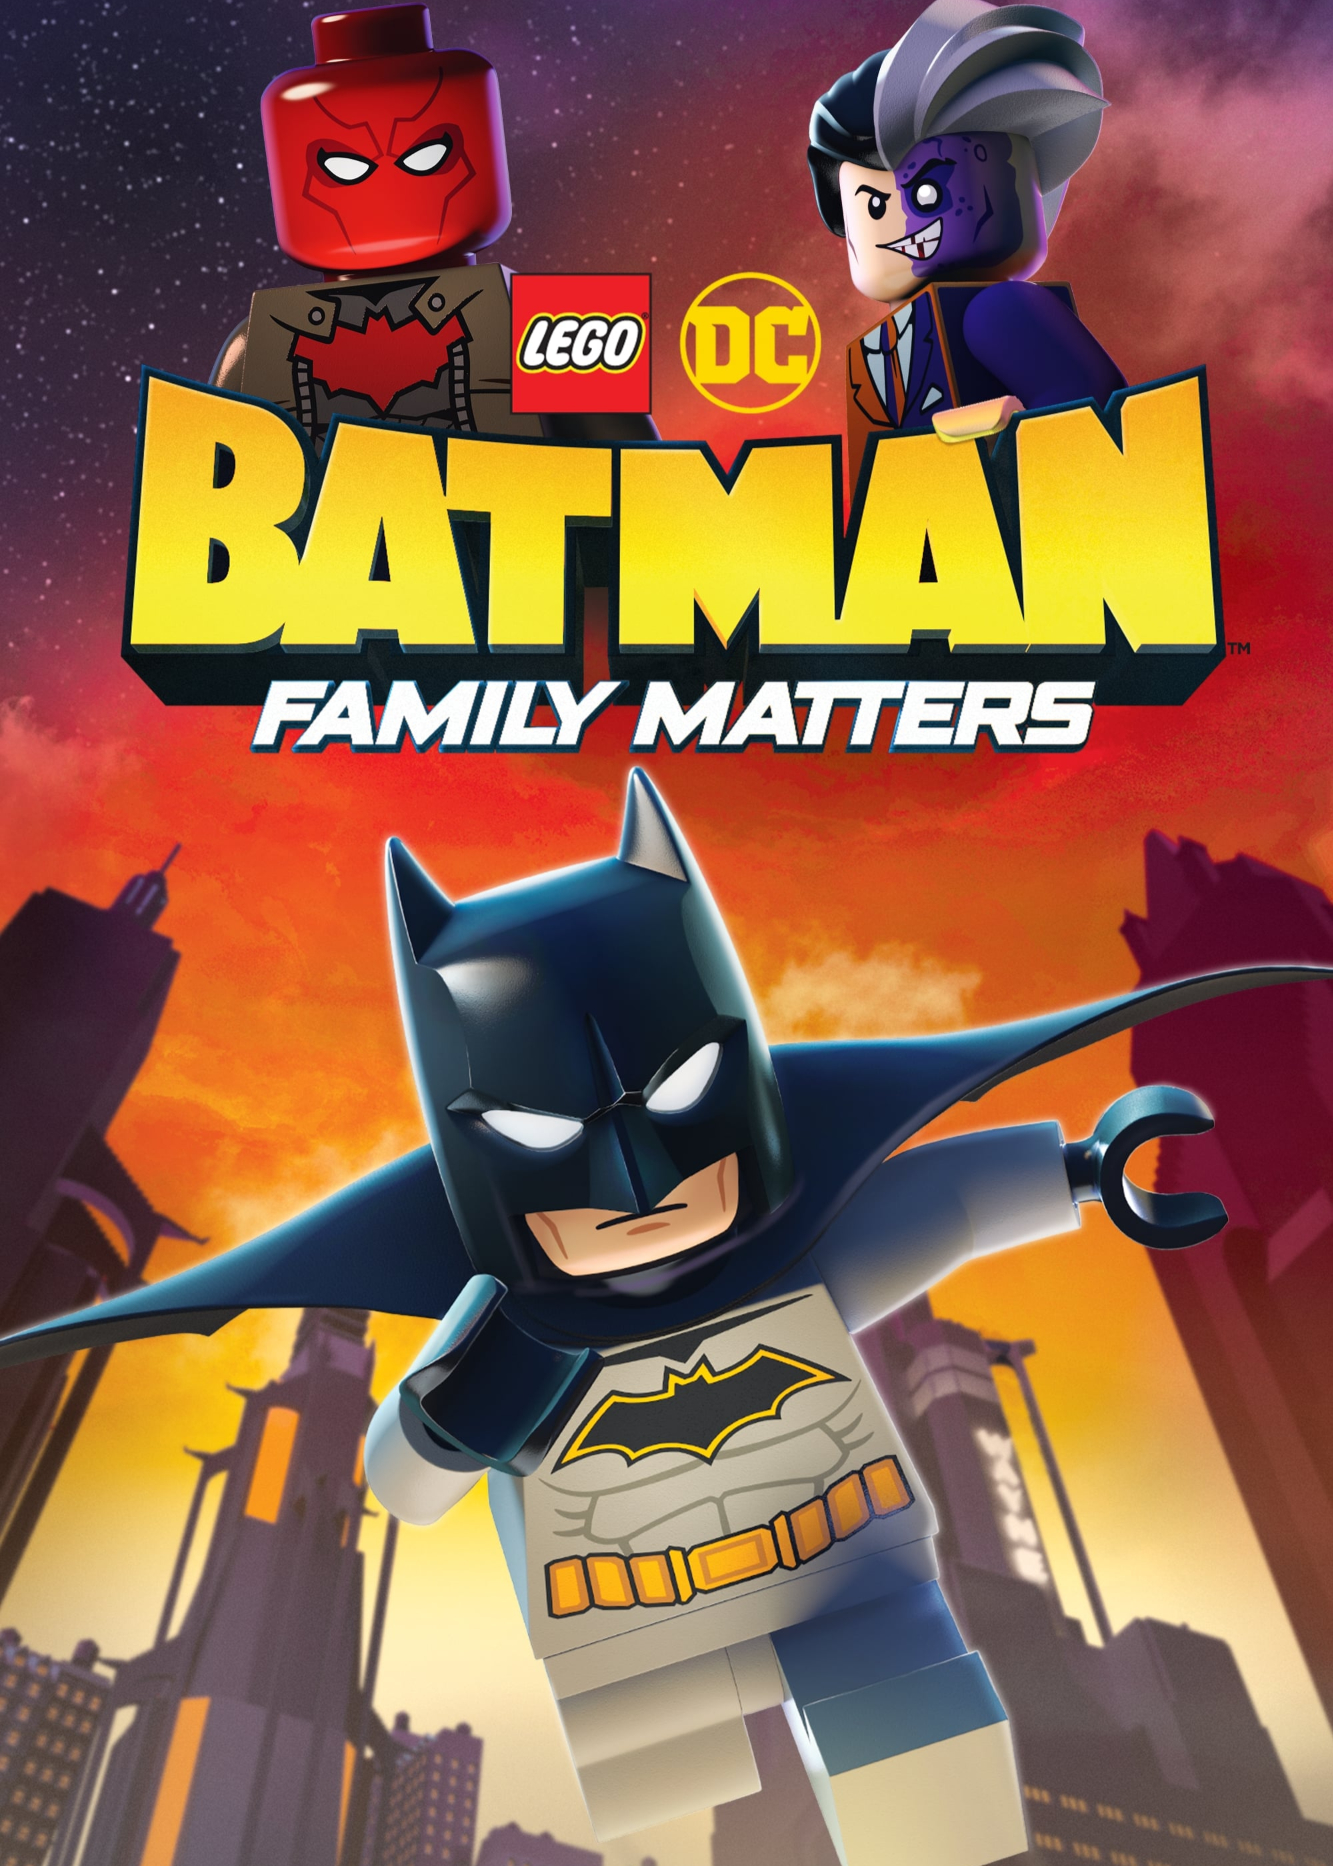 Banner Phim Người Dơi Lego: Vấn Đề Gia Đình (LEGO DC Batman: Family Matters)